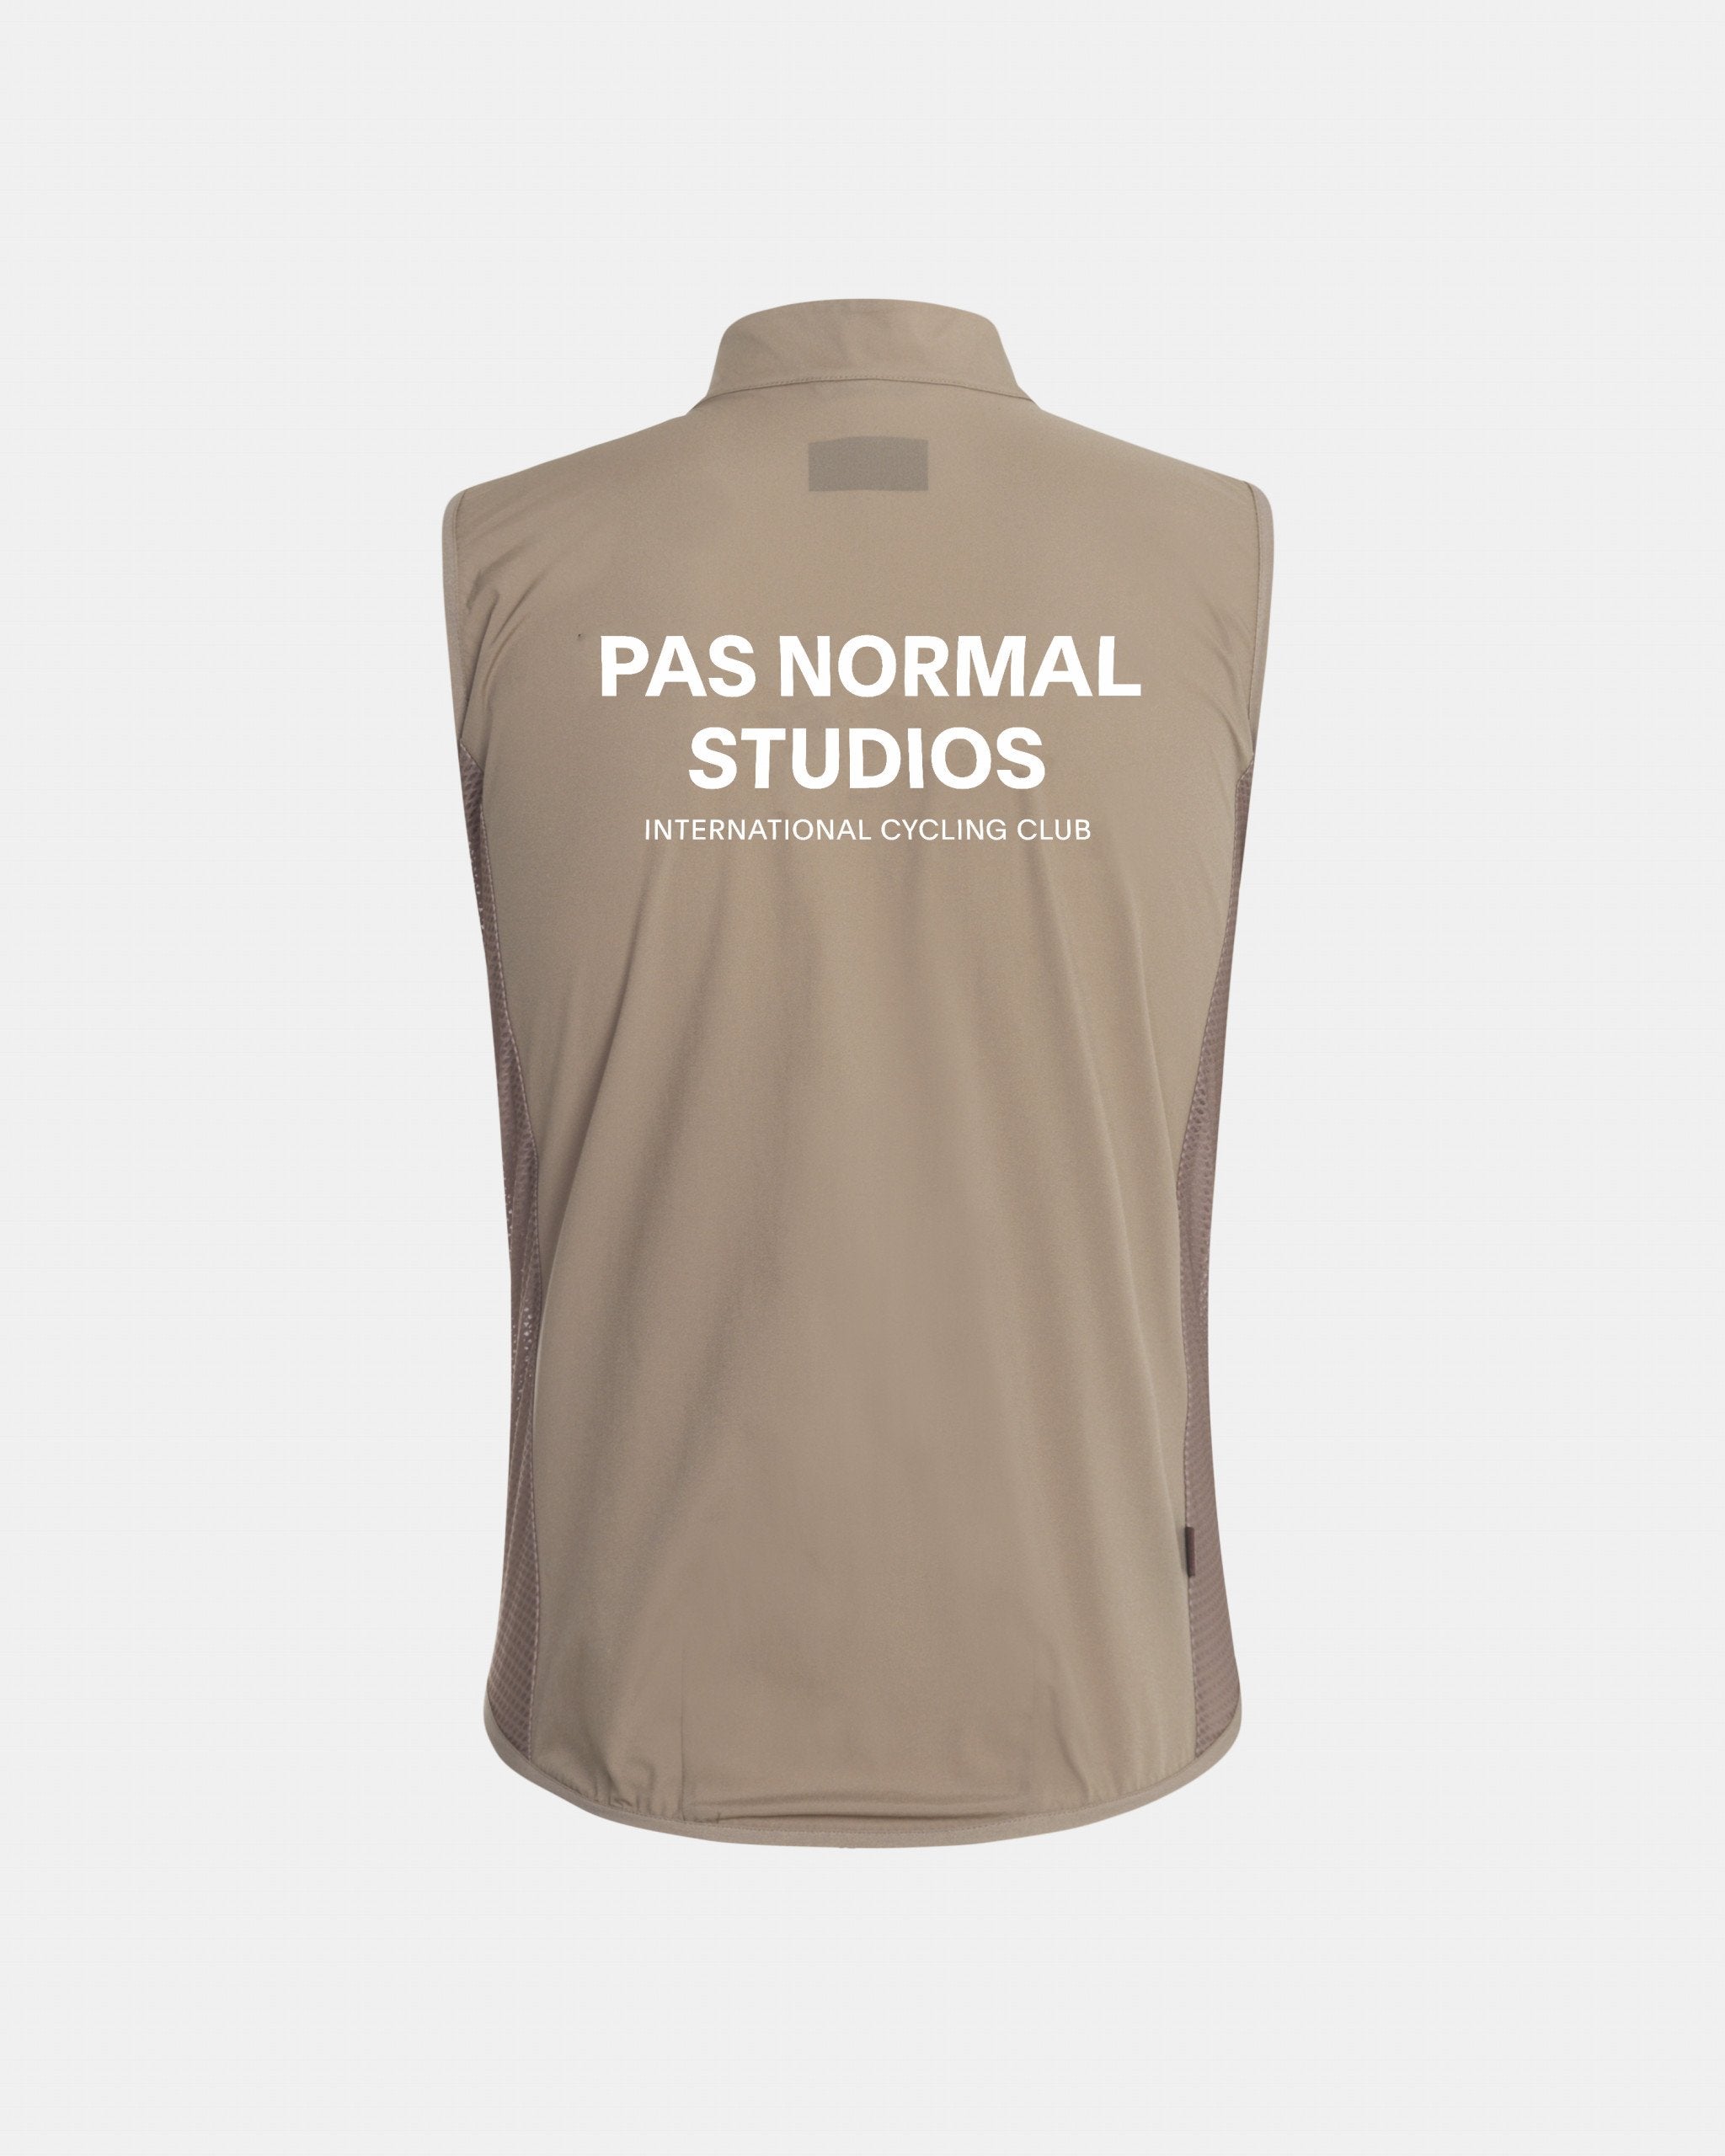 Pas Normal Studios – La Cumbre